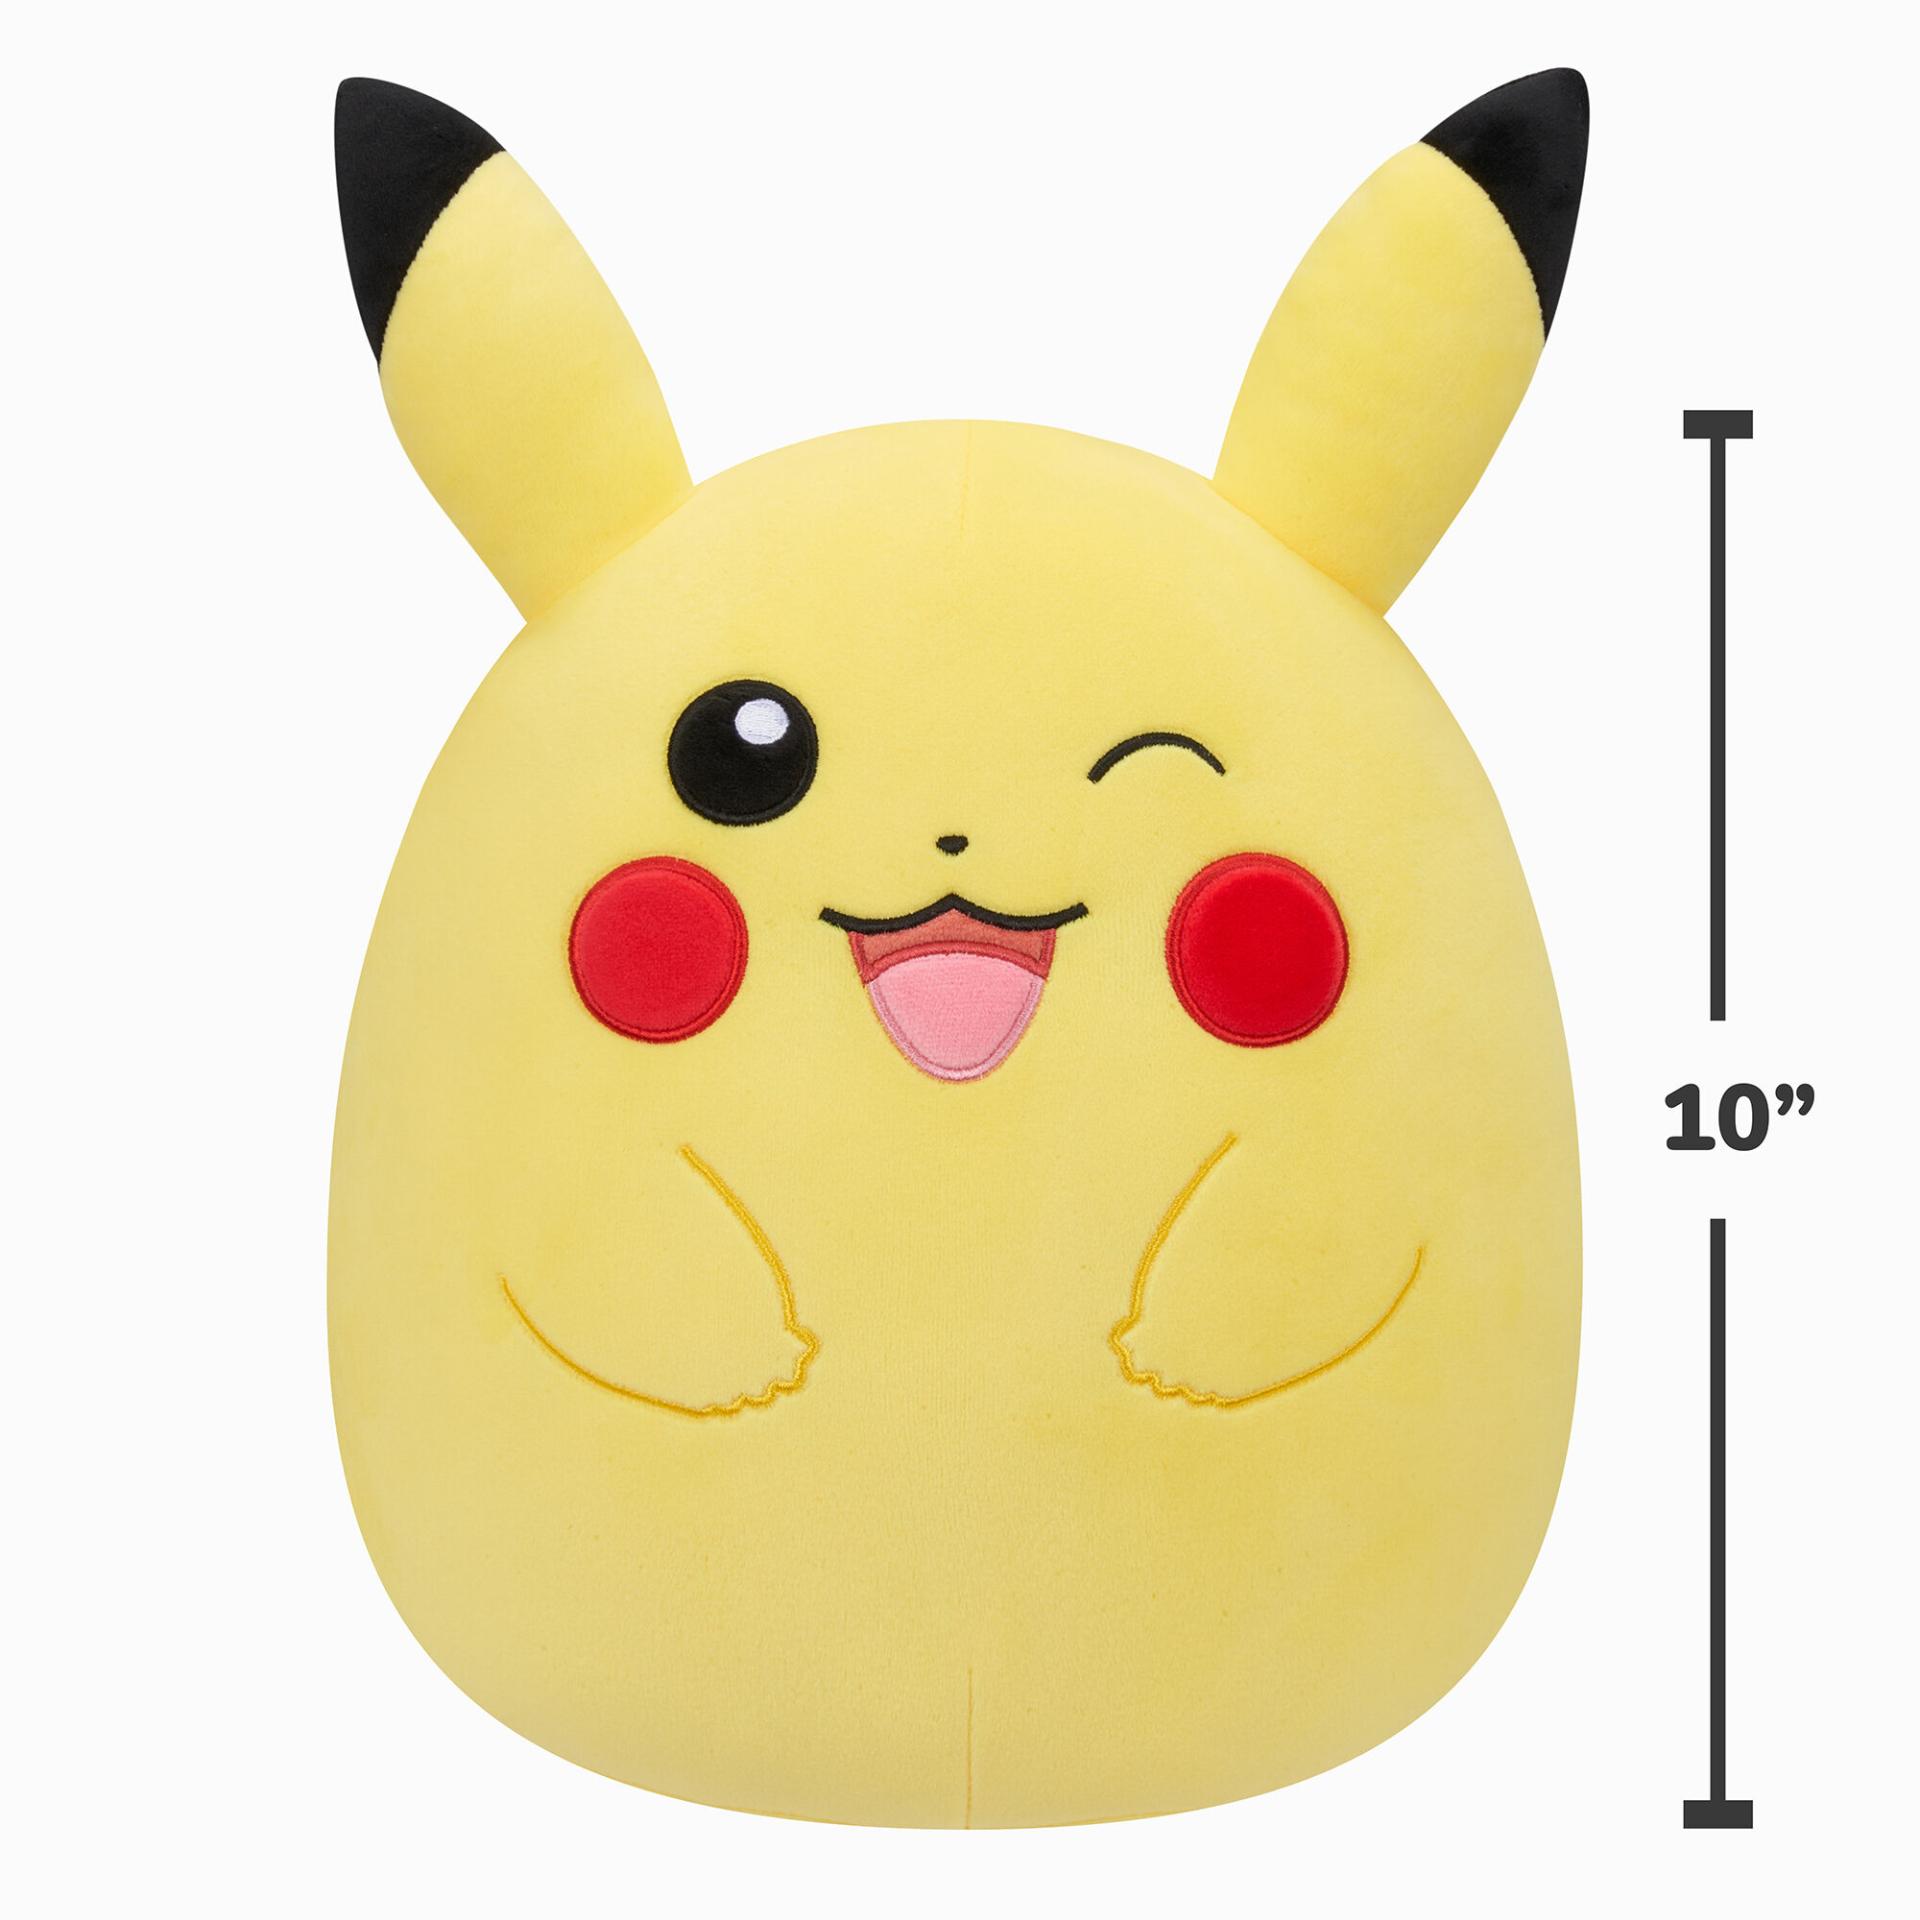 Figurine décoration lampe Pokemon Pikachu, veilleuse mignonne et